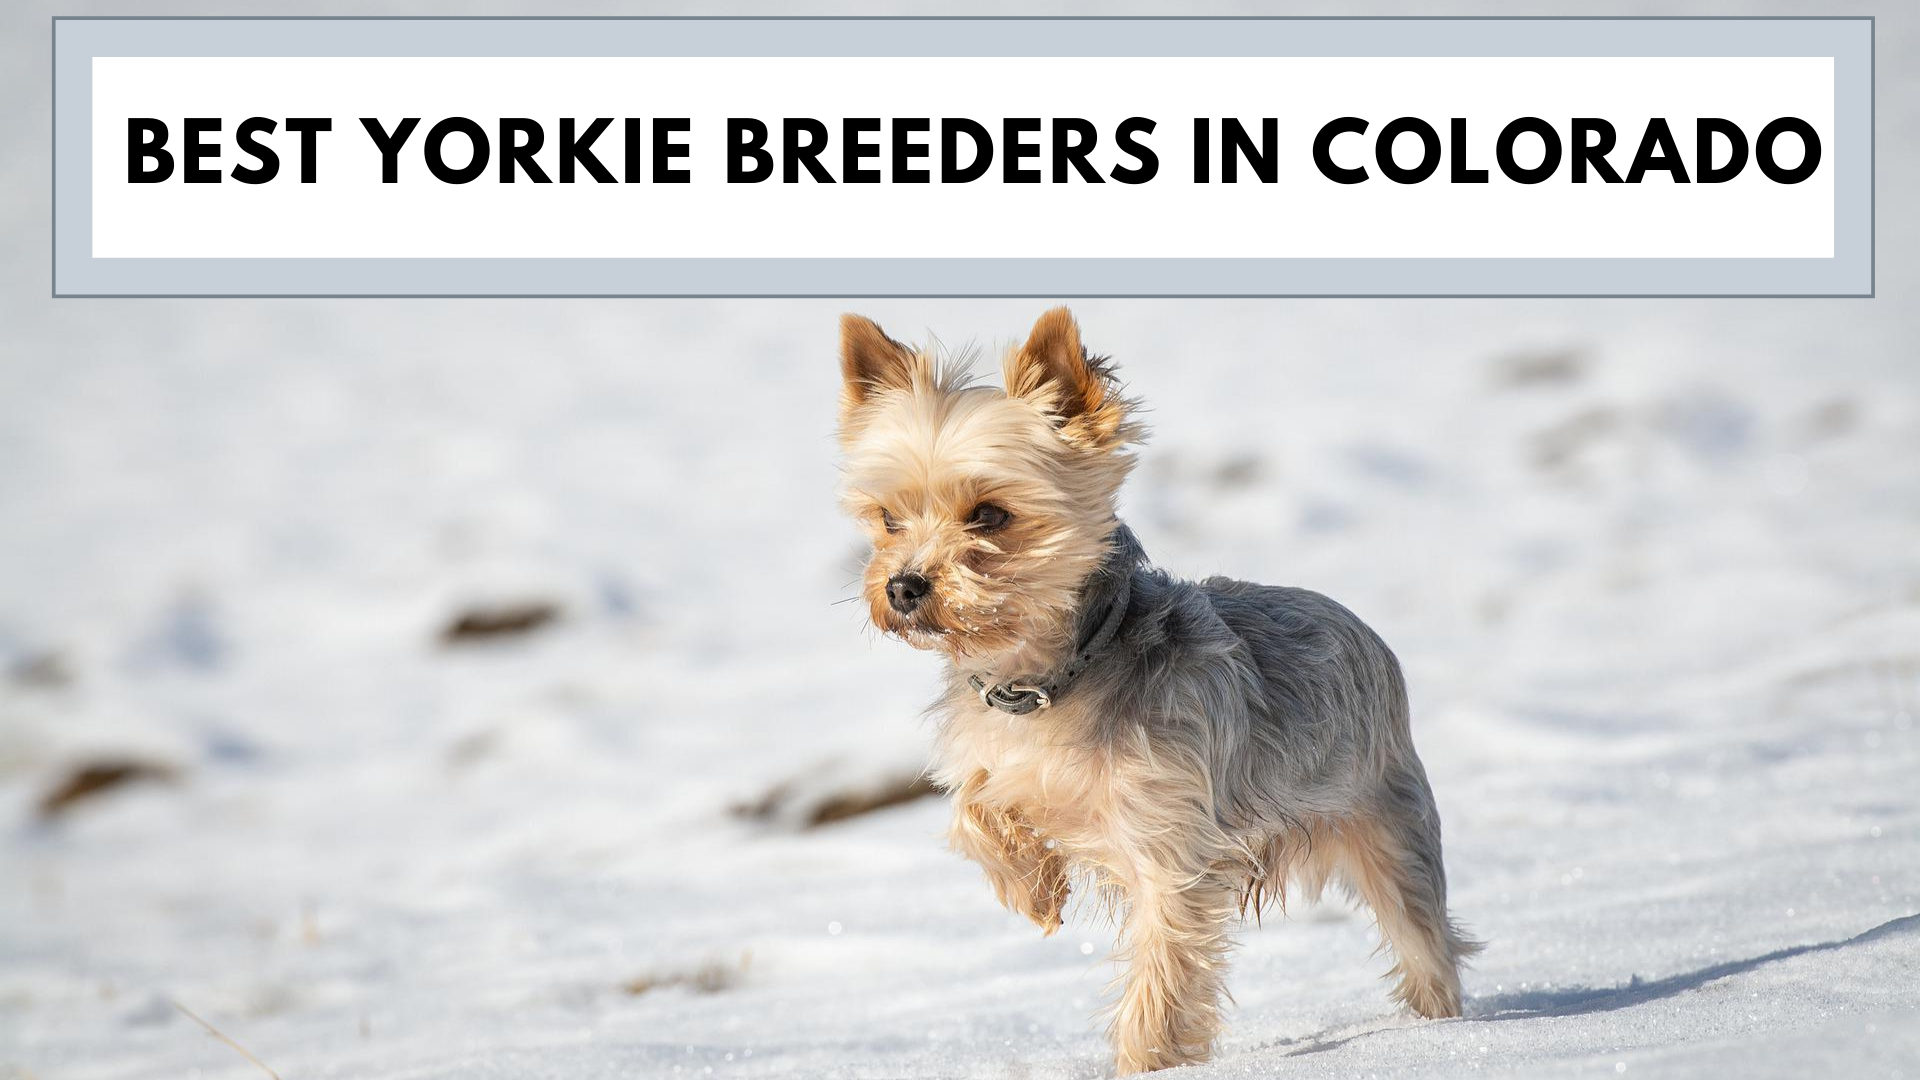 Best Yorkie Breeders in Colorado